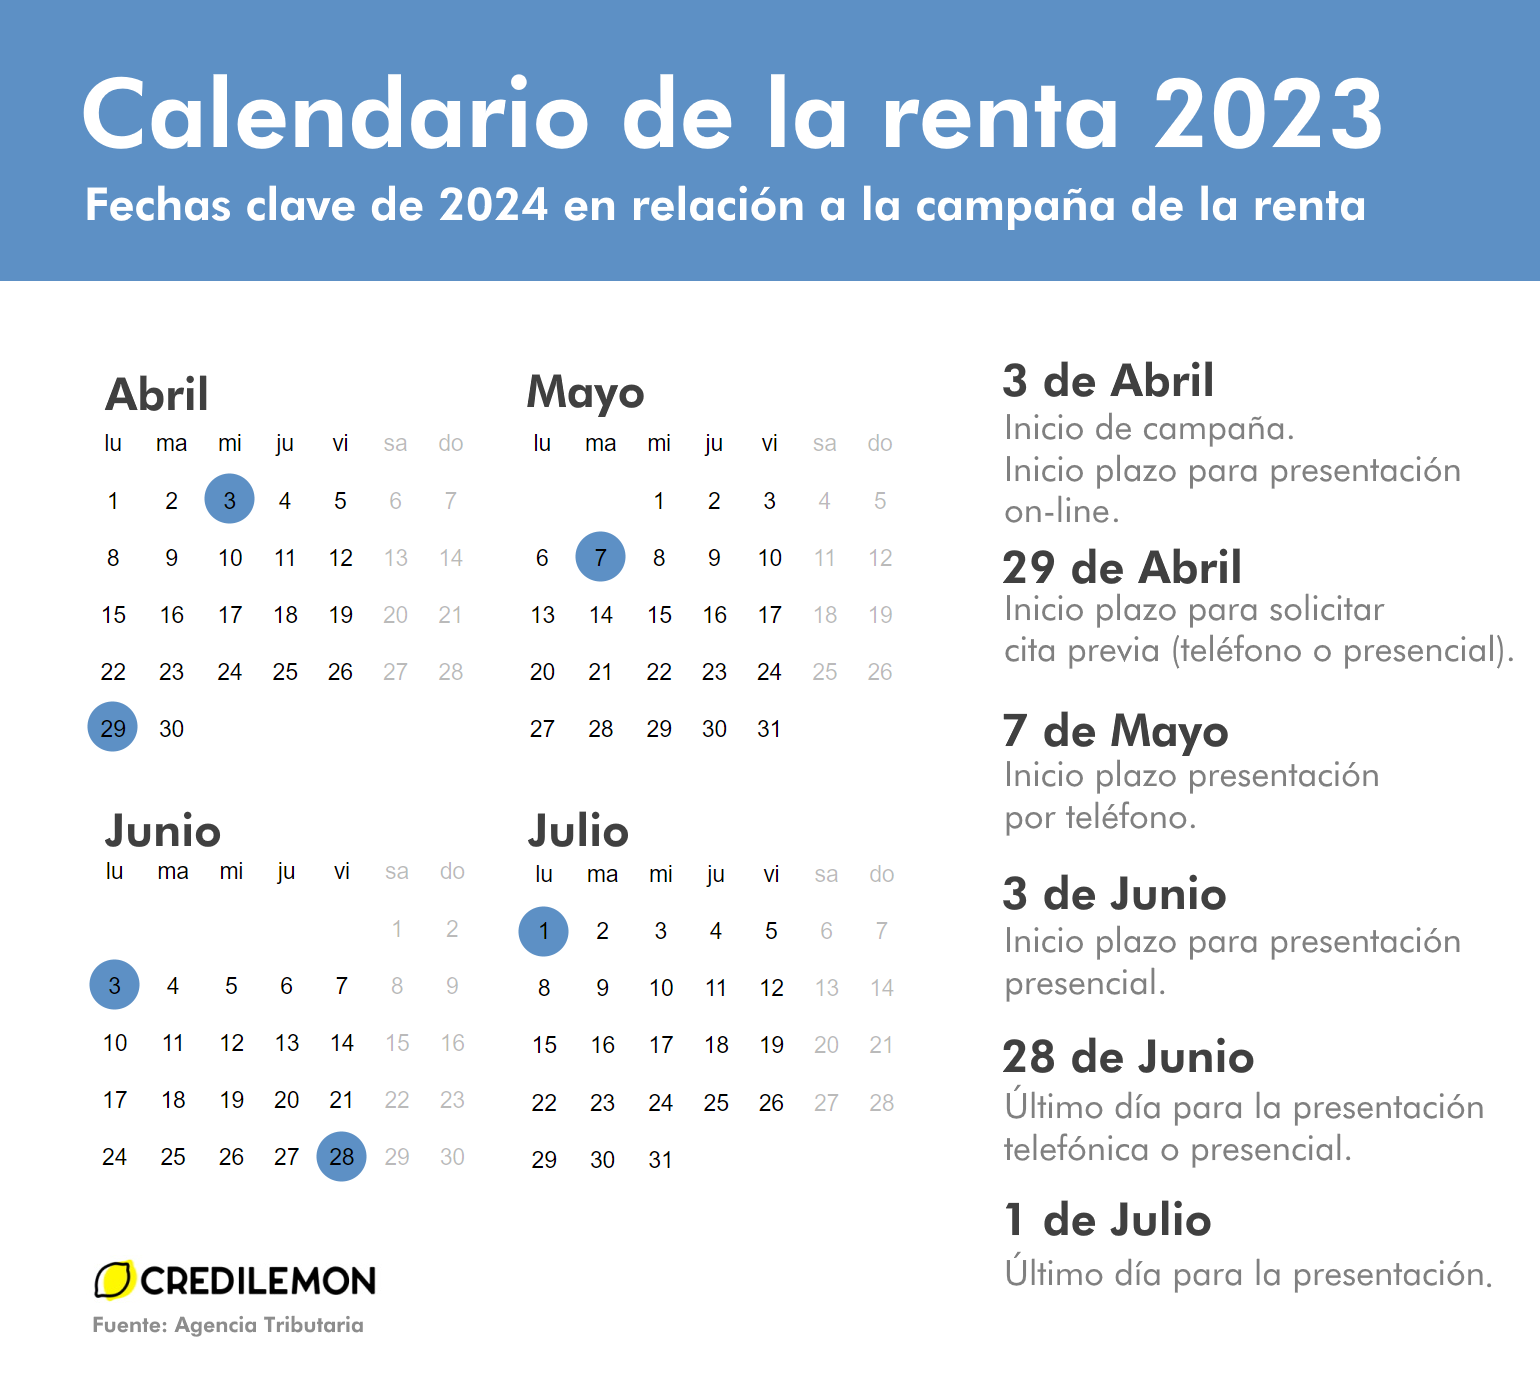 Calendario completo de la campaña de la renta 2023 (Agencia tributaria)